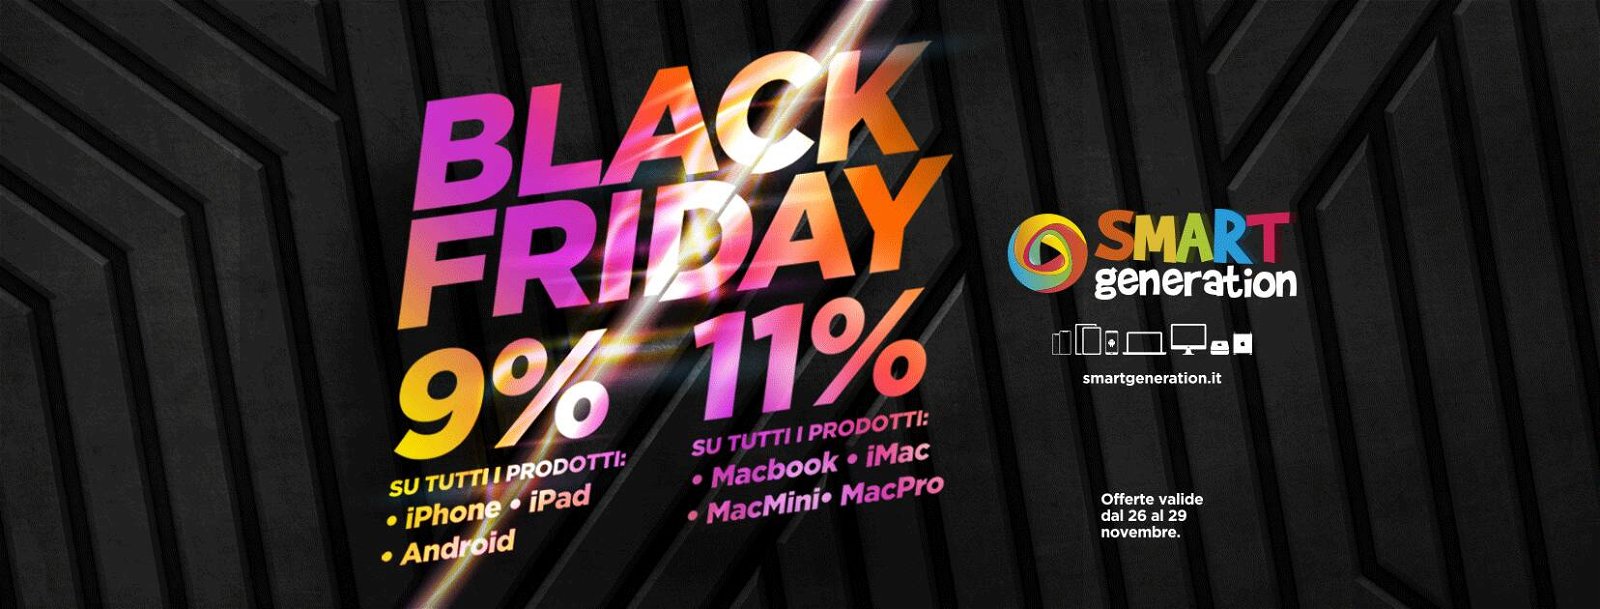 Immagine di MacBook e iPhone ricondizionati: fino a 240 euro di sconti extra per il Black Friday